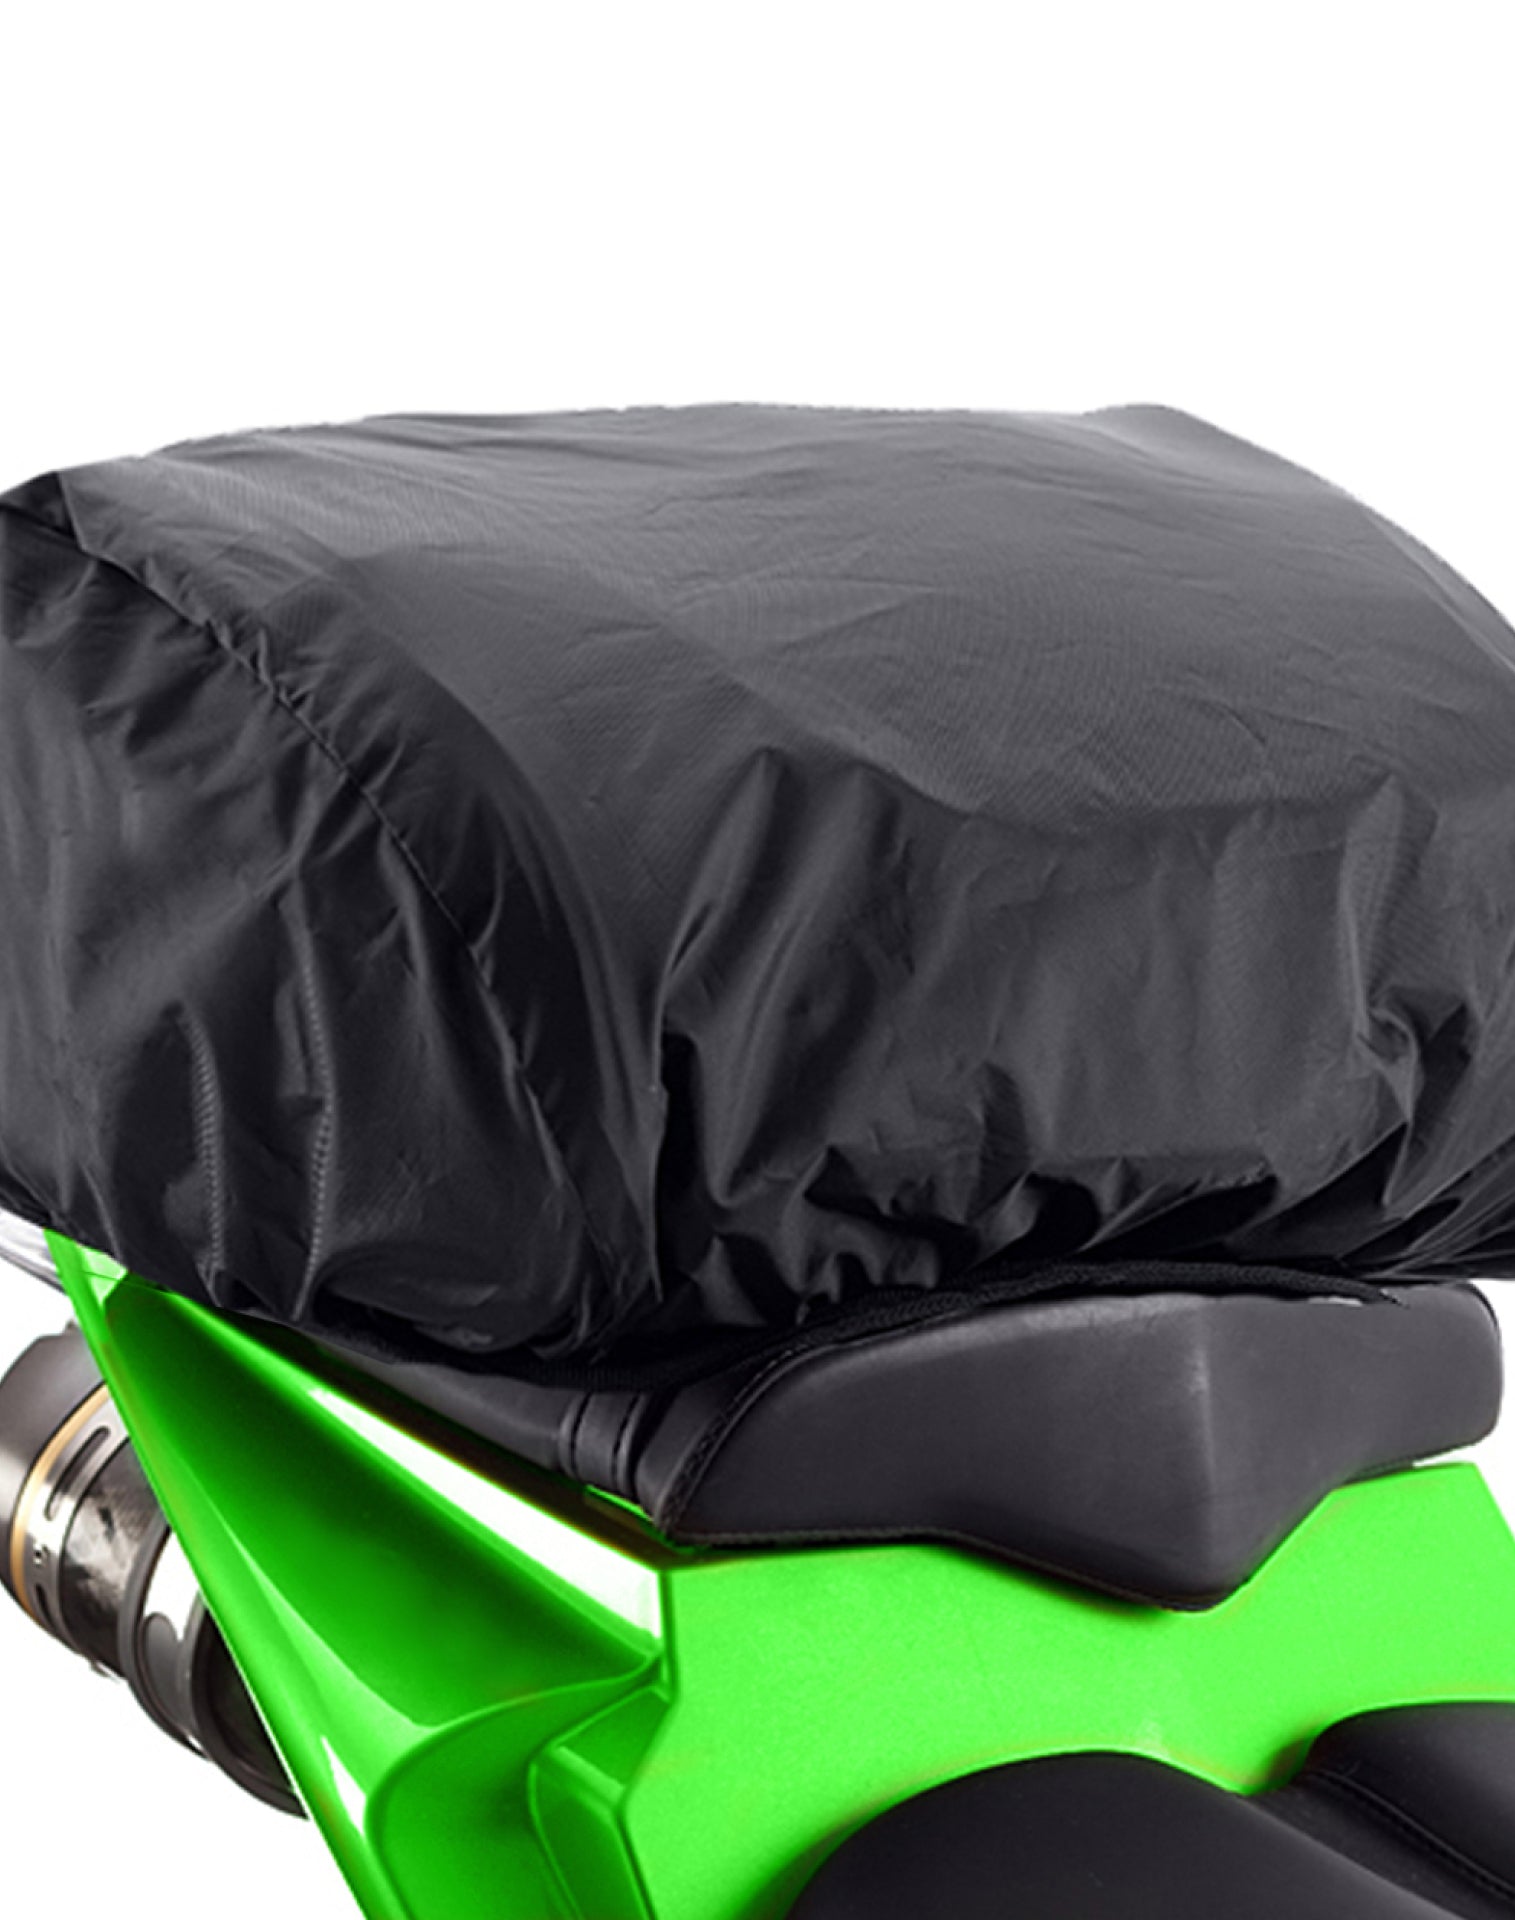 Viking AXE Small Kawasaki Motorcycle Tail Bag Durable